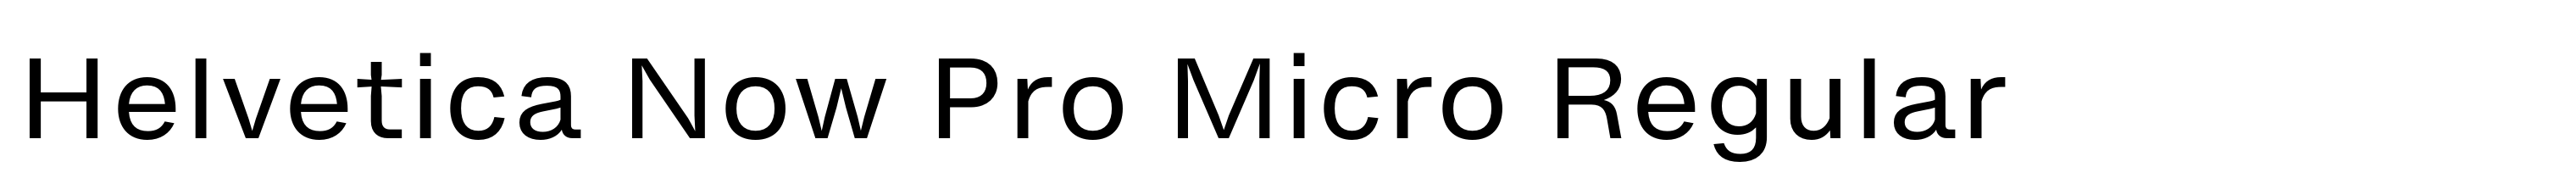 Helvetica Now Pro Micro Regular